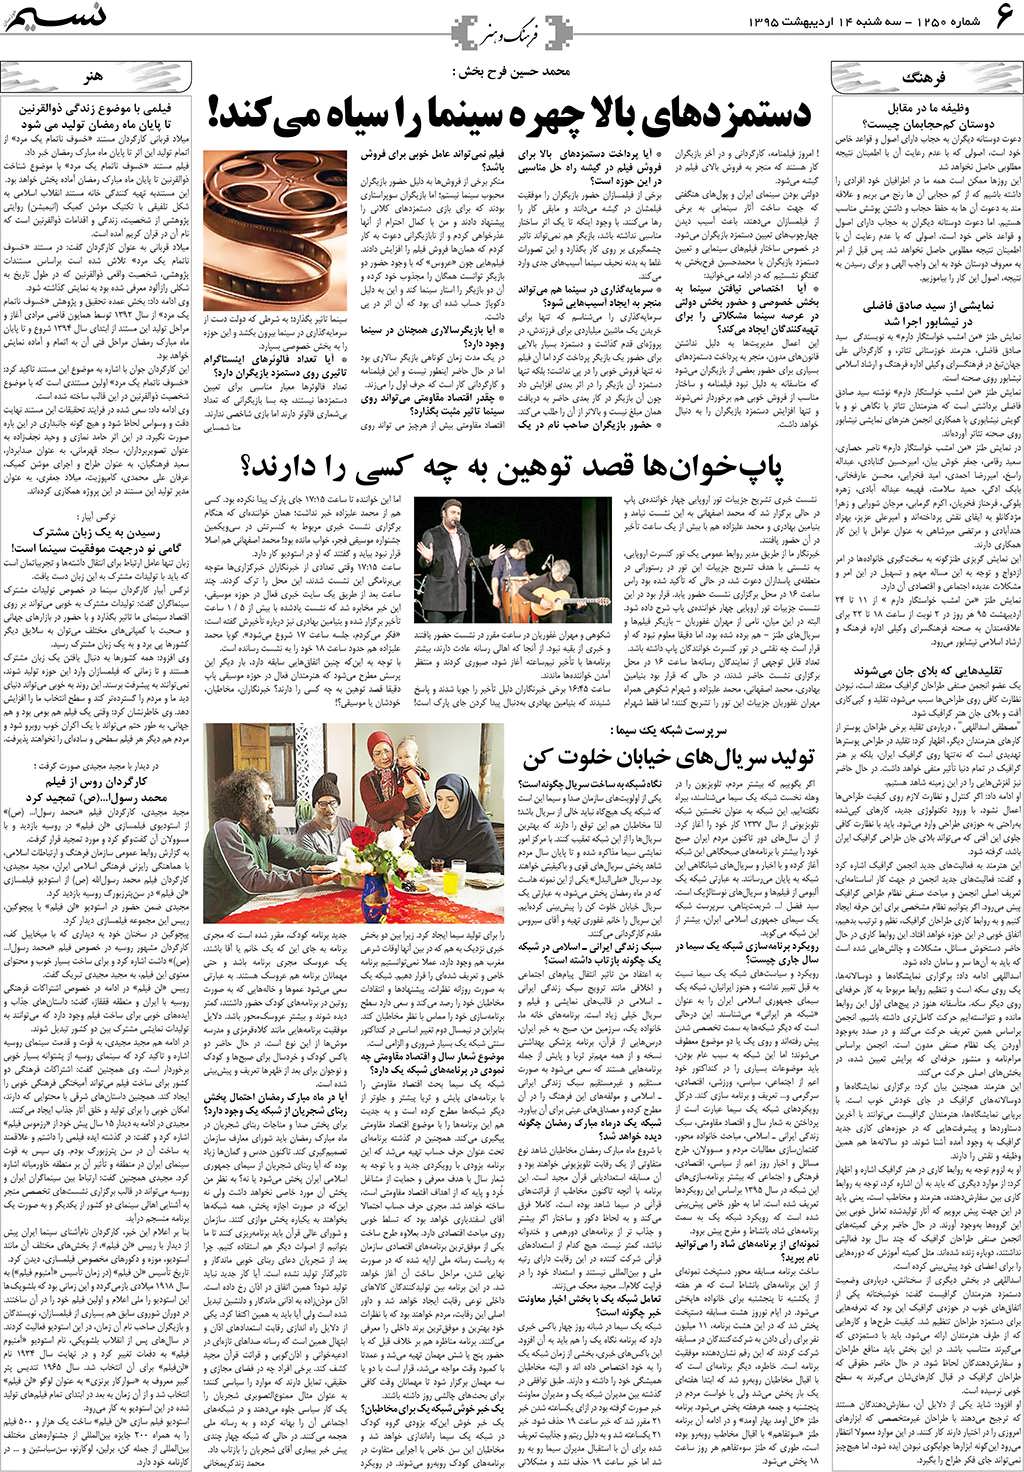 صفحه فرهنگ و هنر روزنامه نسیم شماره 1250